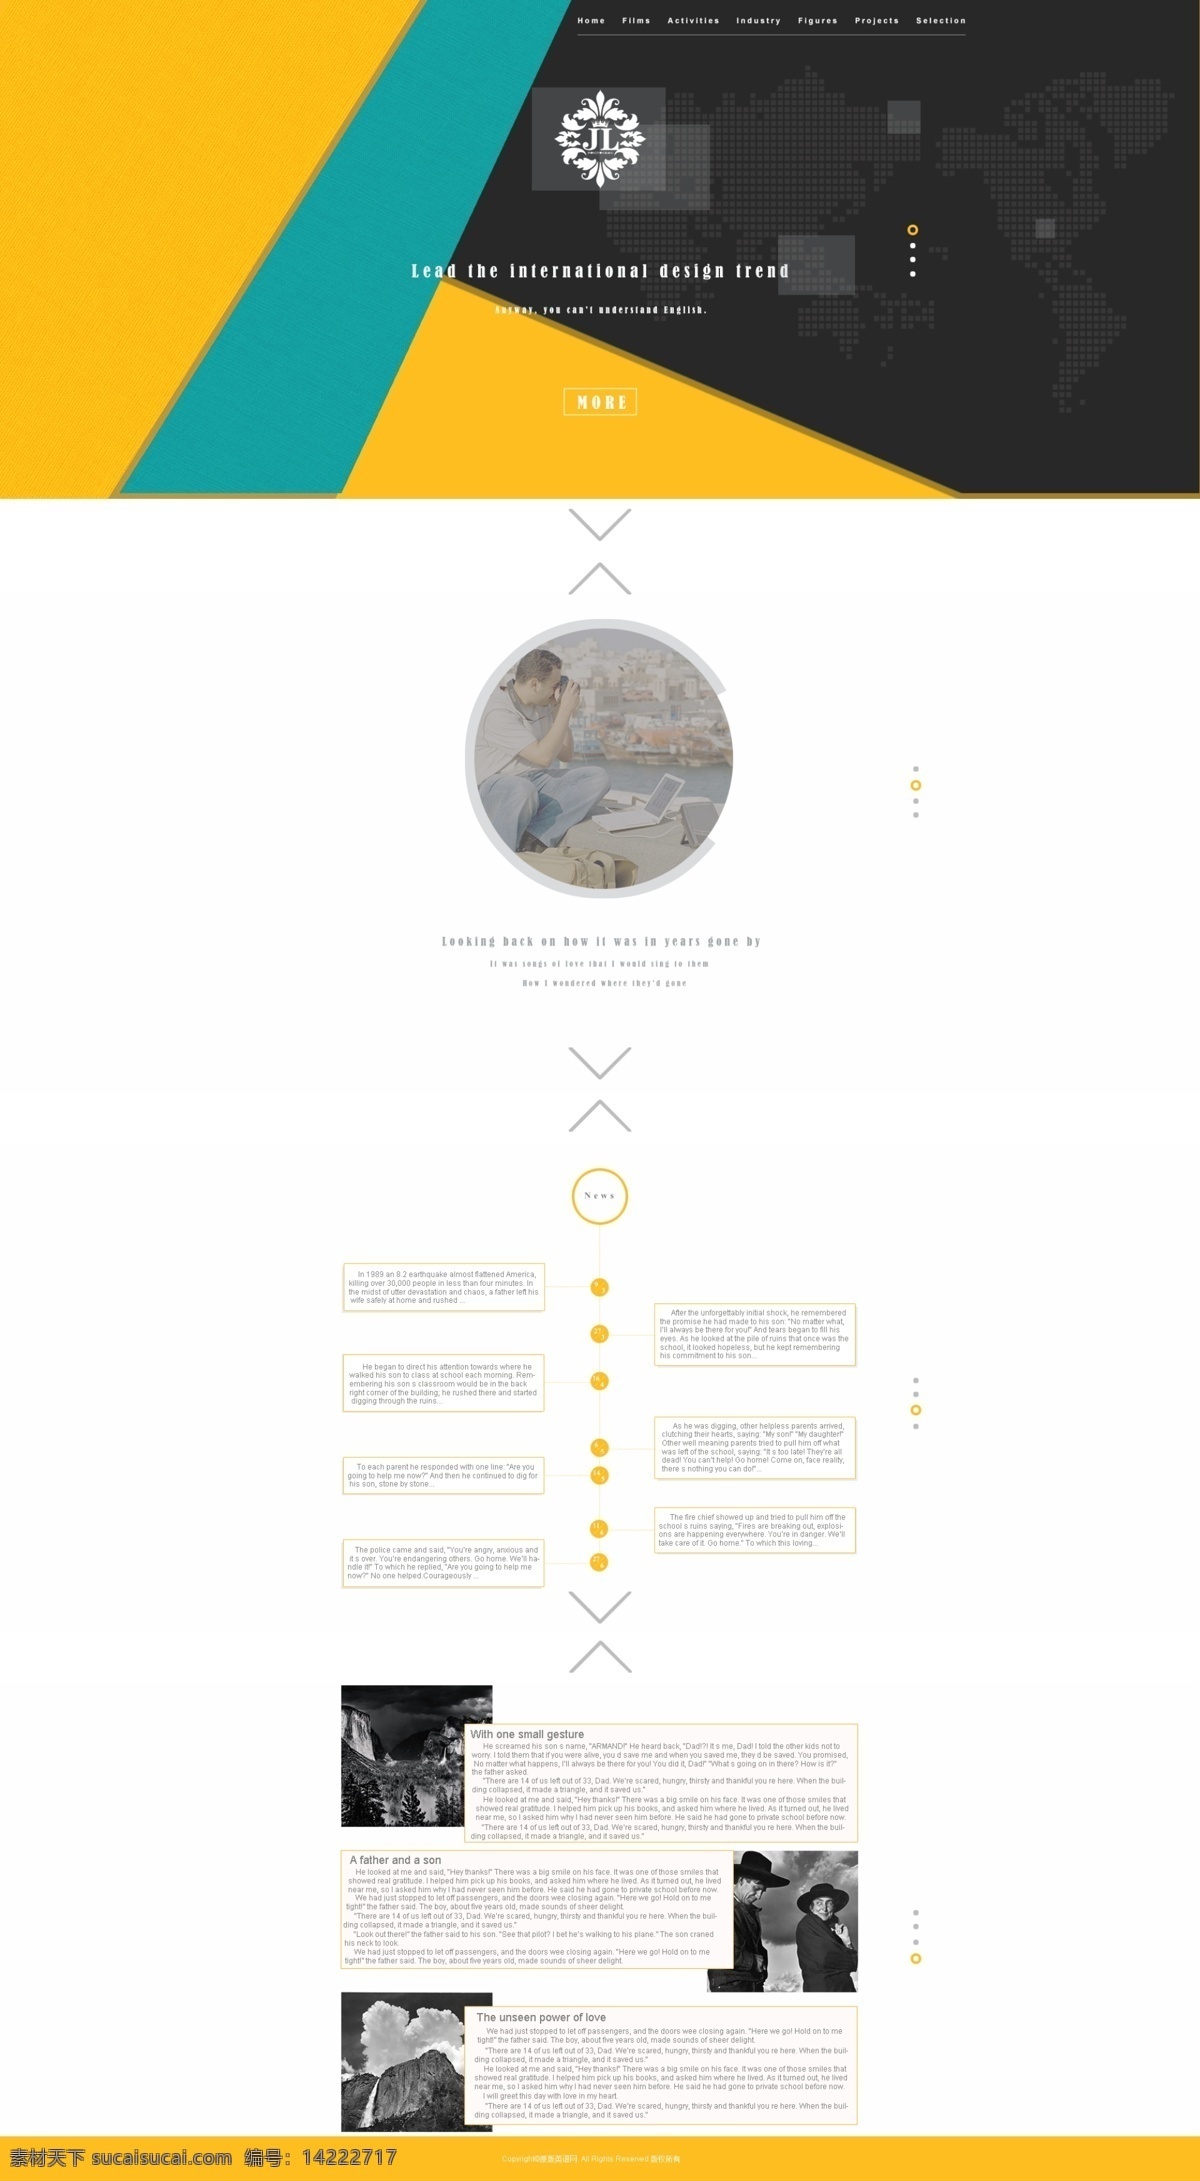 网页设计练习 英文 切割 黄色 网页 模板 web 界面设计 英文模板